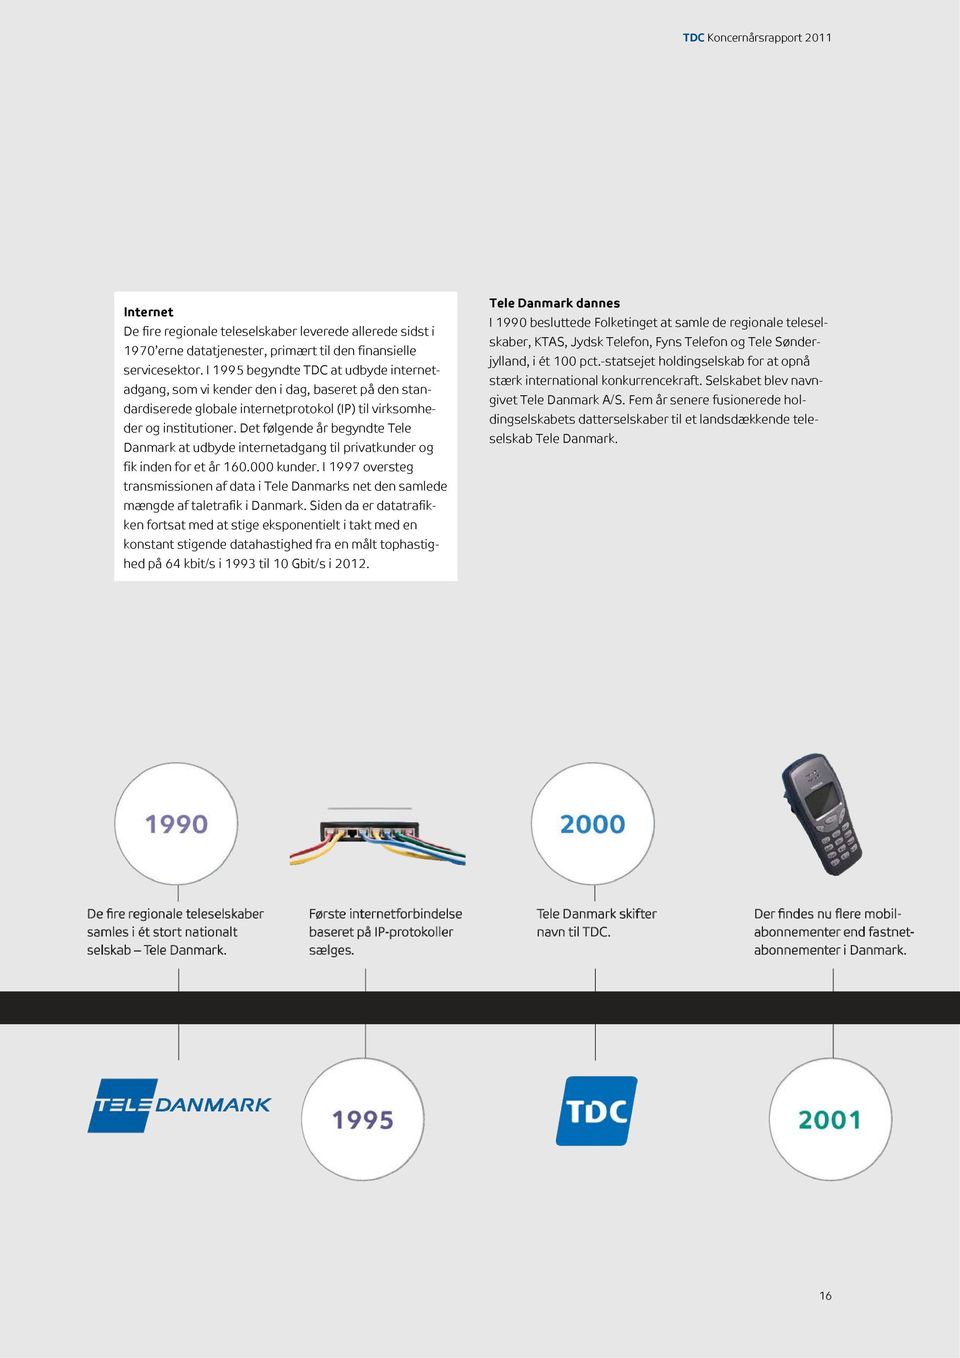 Det følgende år begyndte Tele Danmark at udbyde internetadgang til privatkunder og fik inden for et år 160.000 kunder.